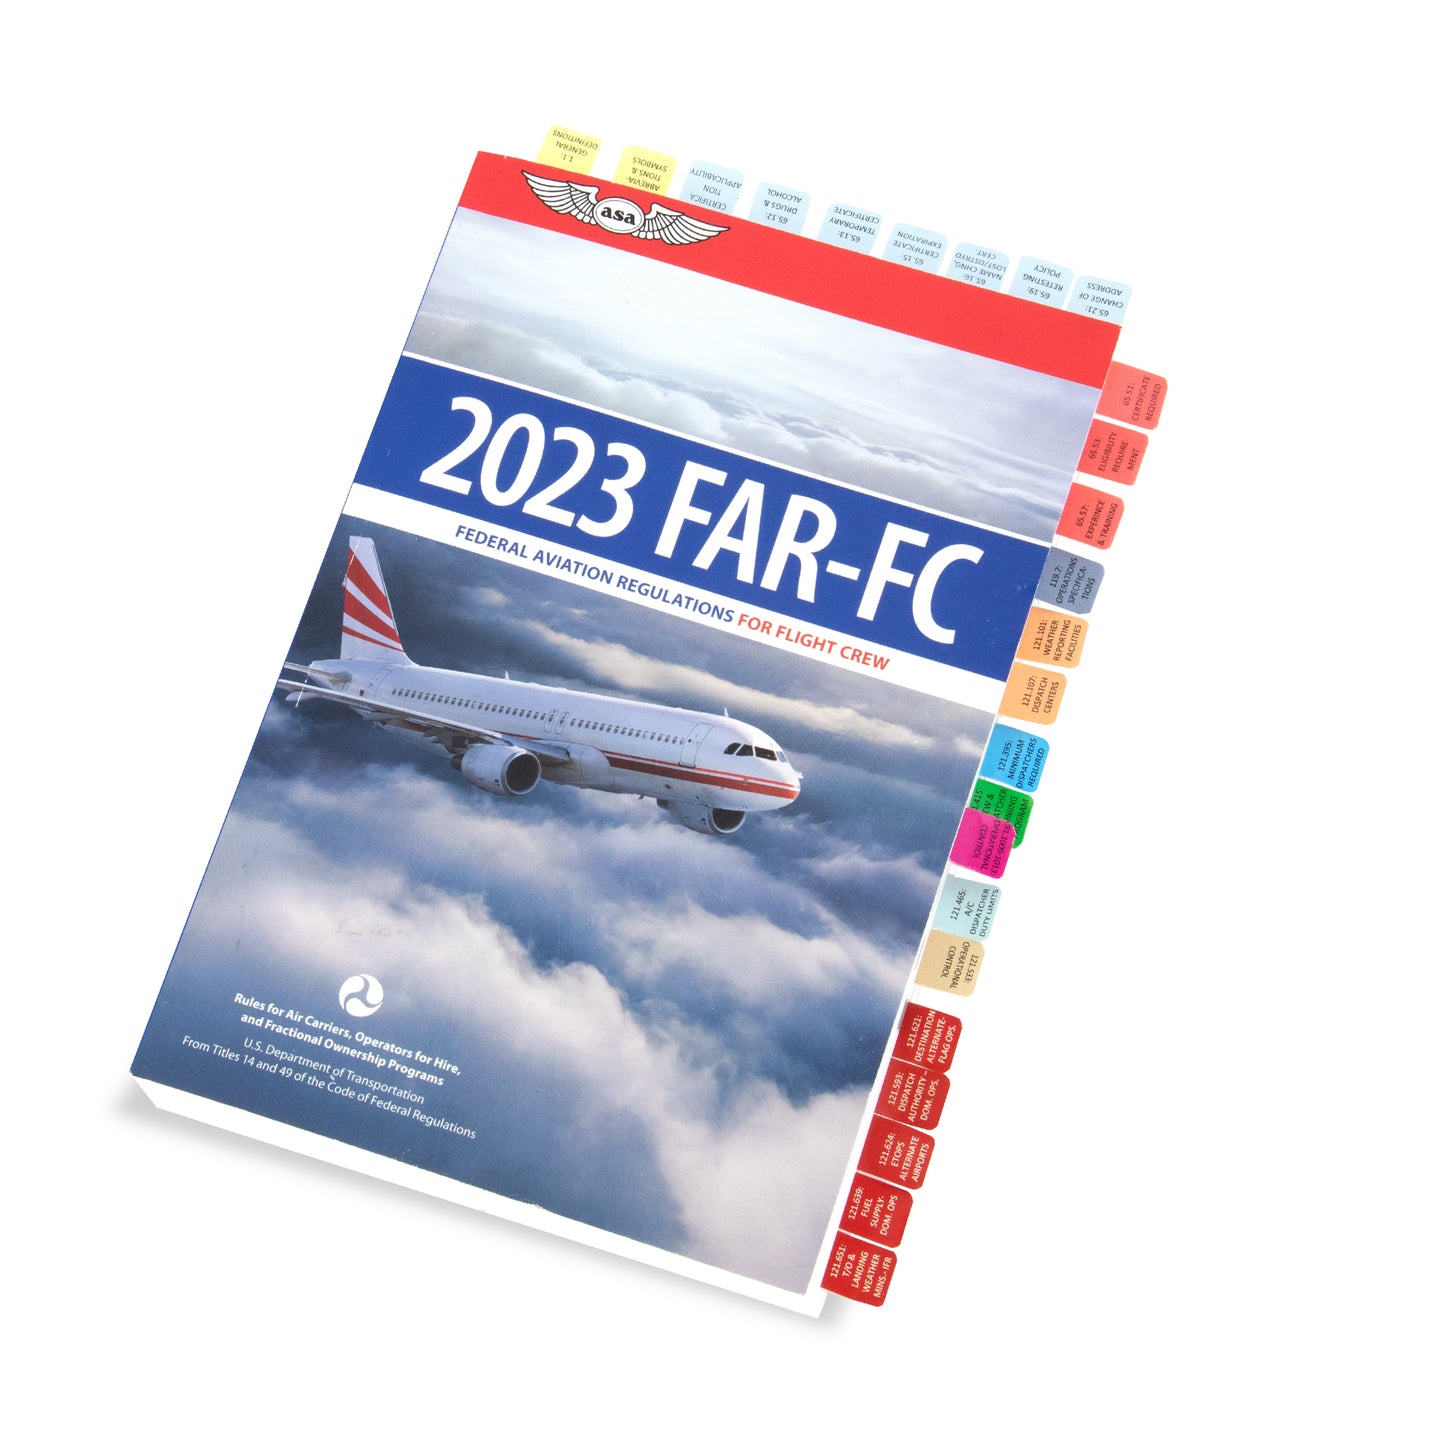 FAR-FC Flags: Aircraft Dispatcher